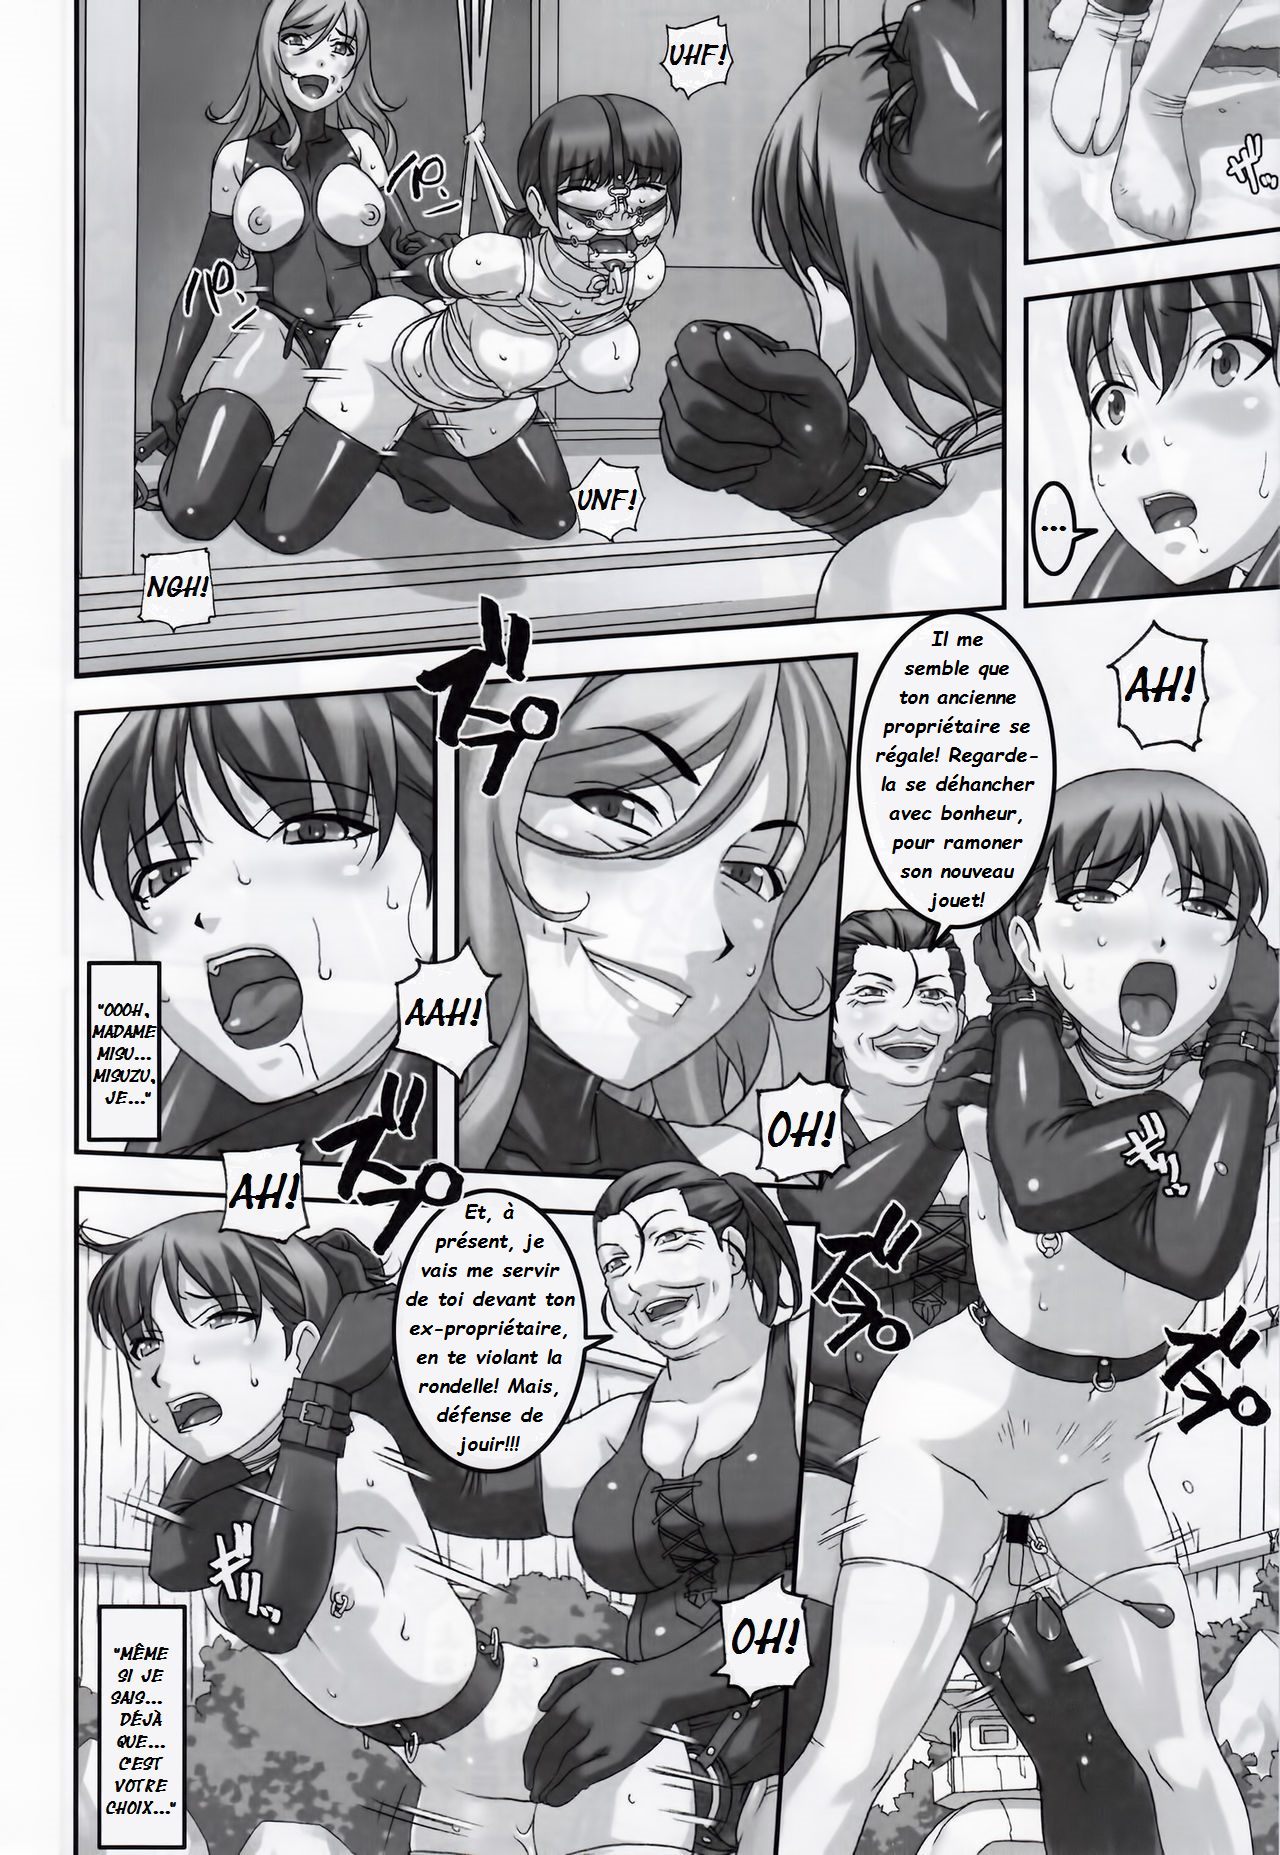 Anoko ga Natsuyasumi ni Ryokou saki de Oshiri no Ana o Kizetsu suru hodo Naburare Tsuzukeru Manga 2  La jeune Rei et sa nounou Misuzu. Volume 3 numero d'image 13